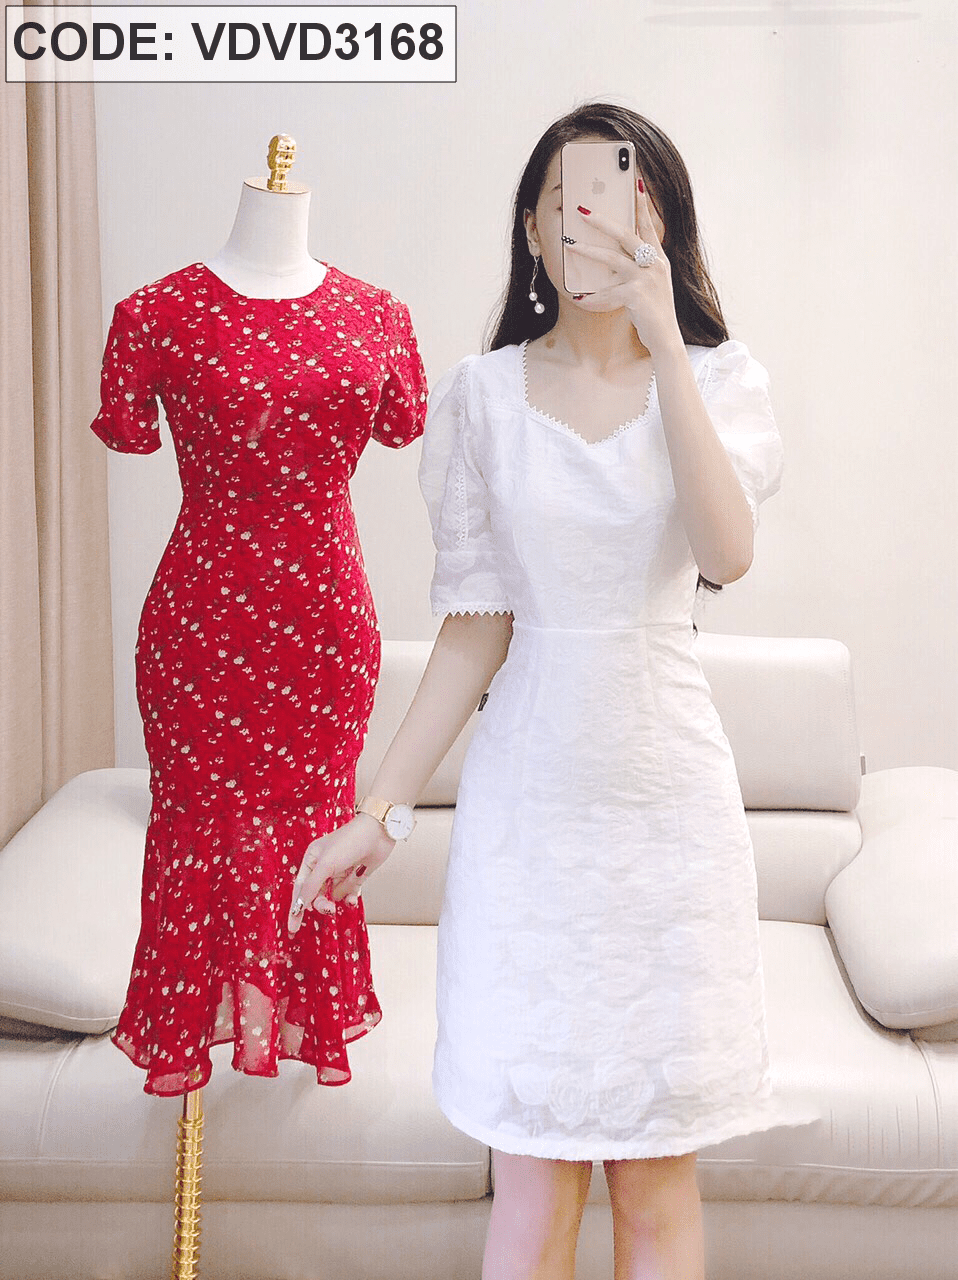 10+ mẫu váy trắng dành cho người béo mà bạn cần biết